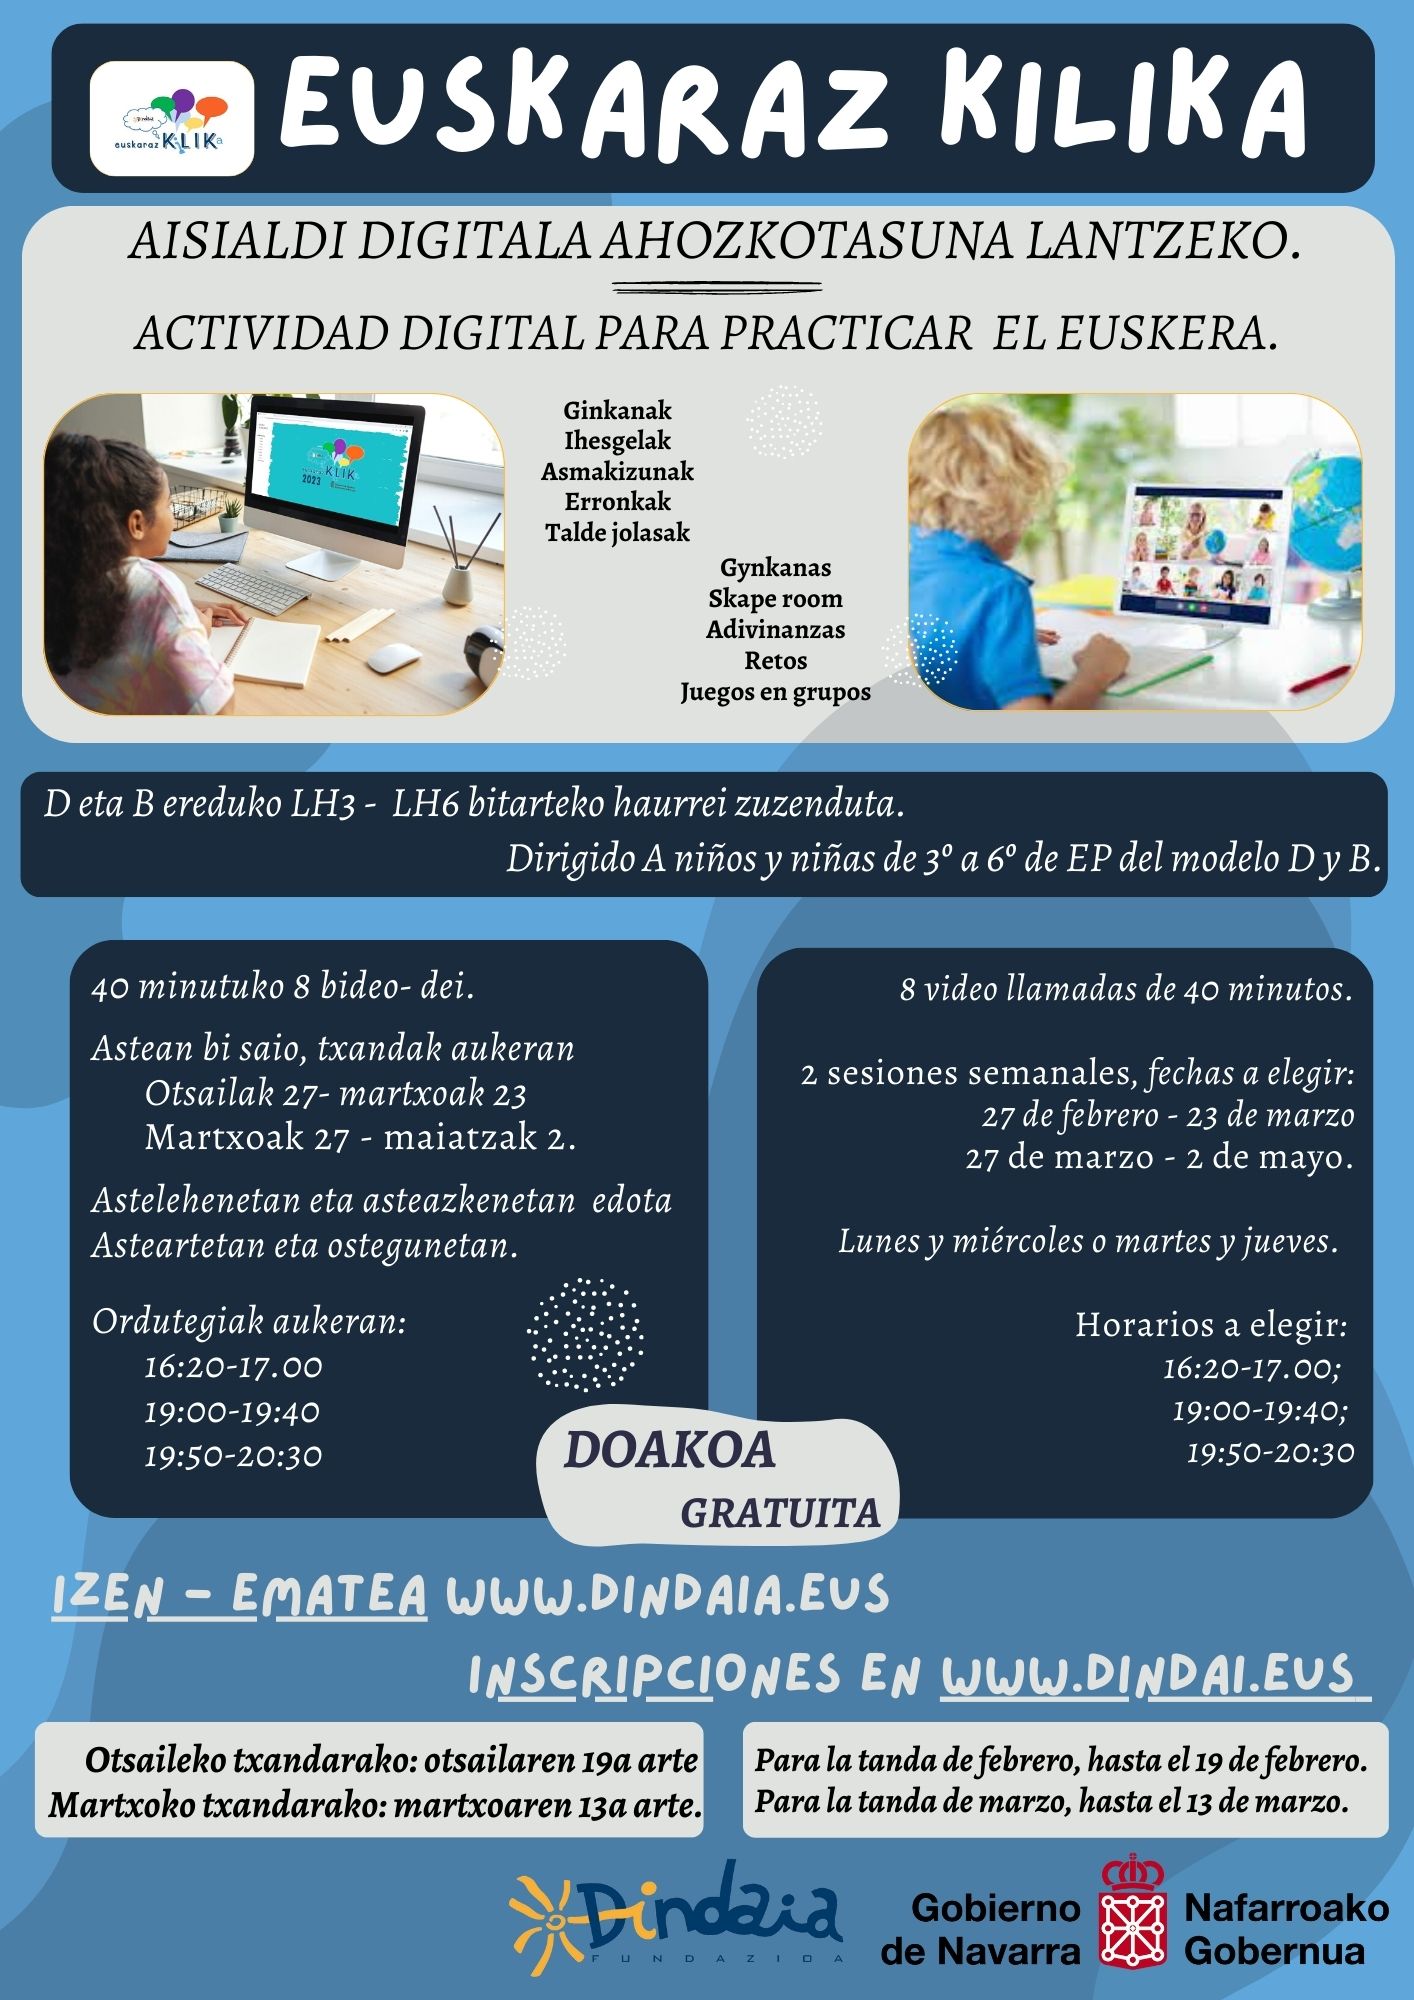 Euskaraz Kilika: Actividad infantil digital para practicar el euskera